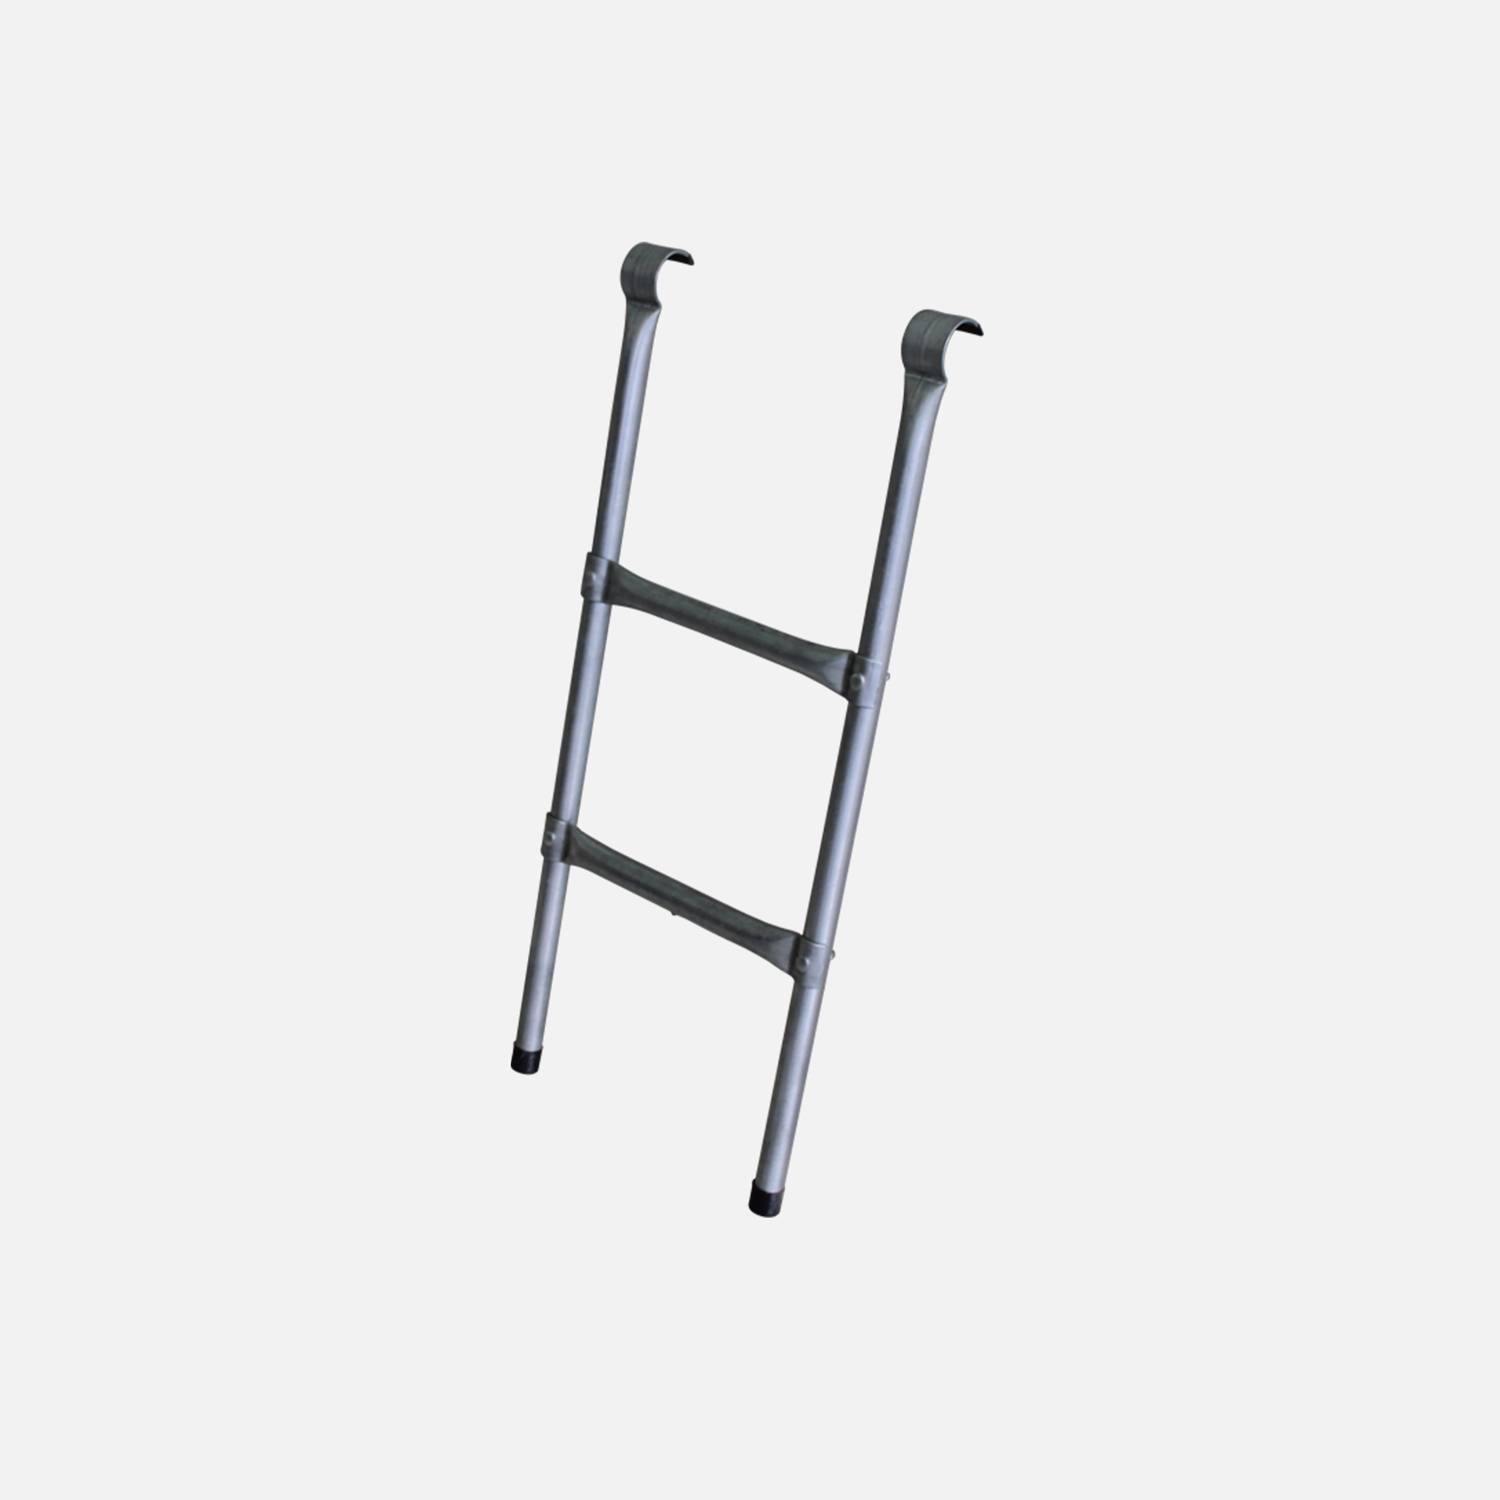 Leiter für Trampolin mit einem Durchmesser von 245 oder 250 cm - Aus Stahl - Qualität PRO. | EU-Normen Photo1